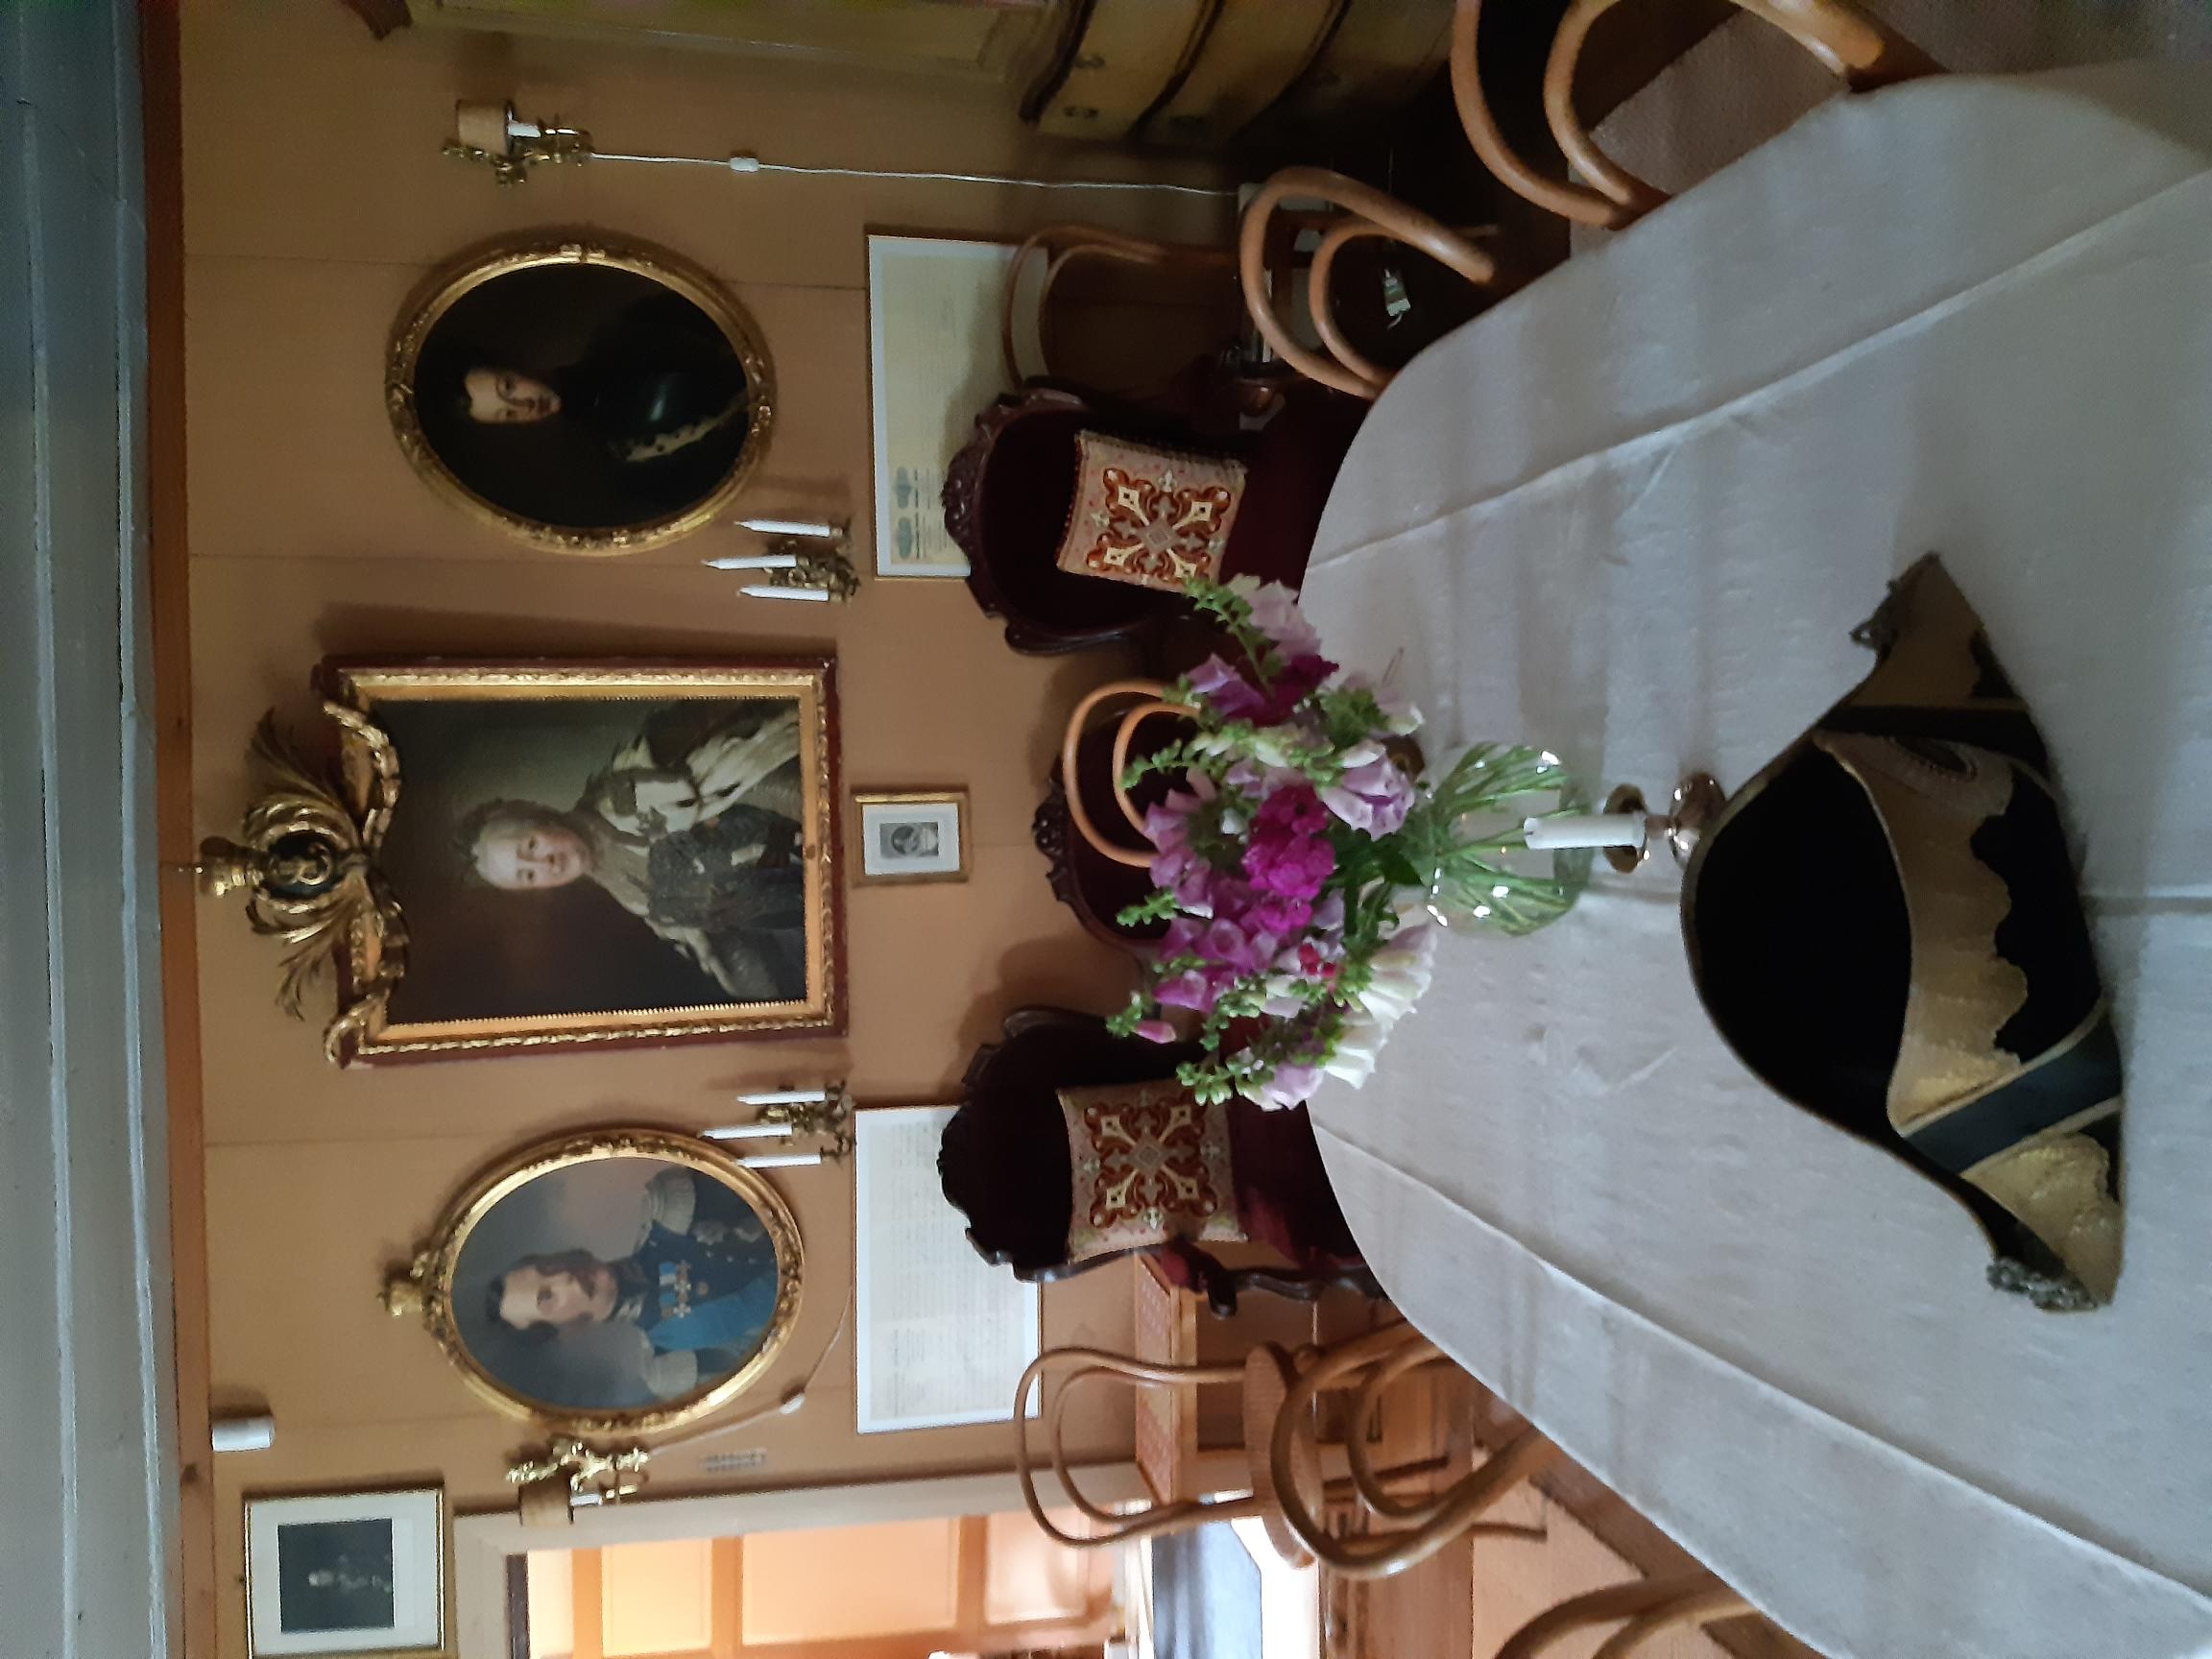 Kuvassa näkyy Mäntyniemen kartanon sali, jossa muotokuvatauluja seinällä sekä iso pöytä tuolit ympärillään.